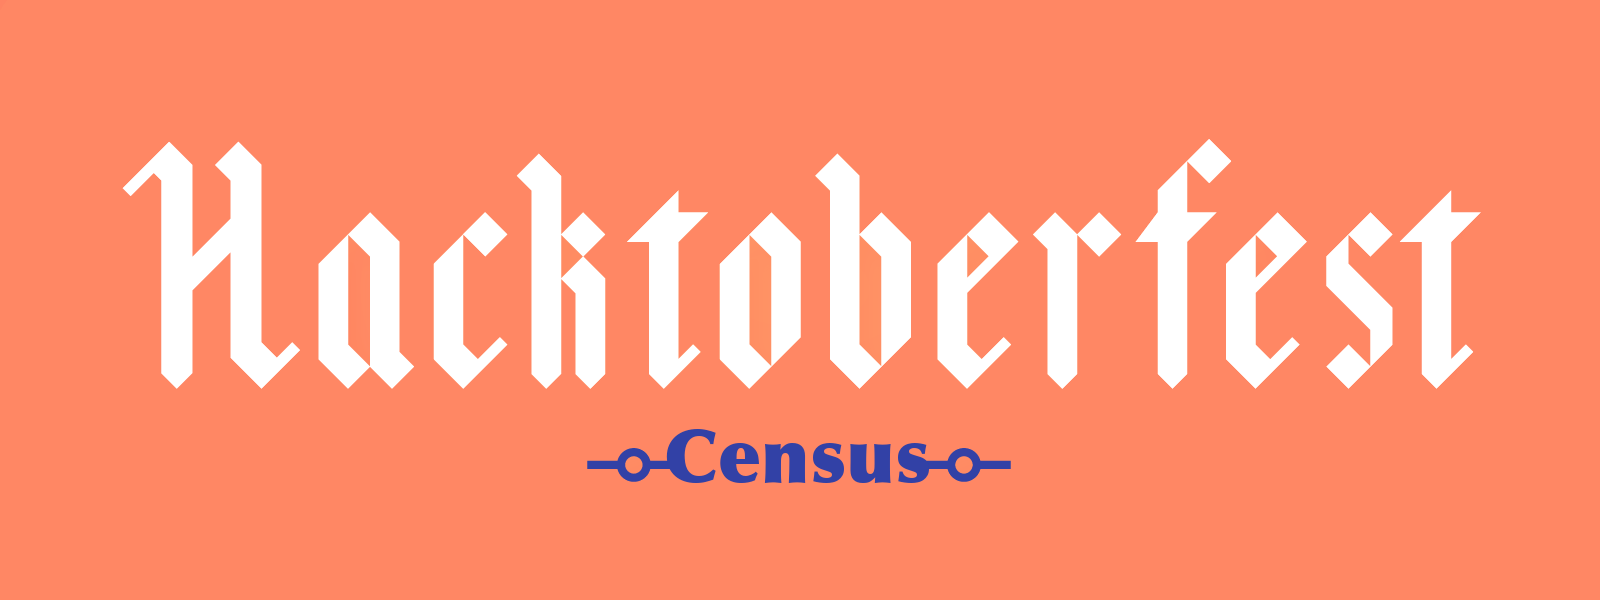 Hacktoberfest-Census